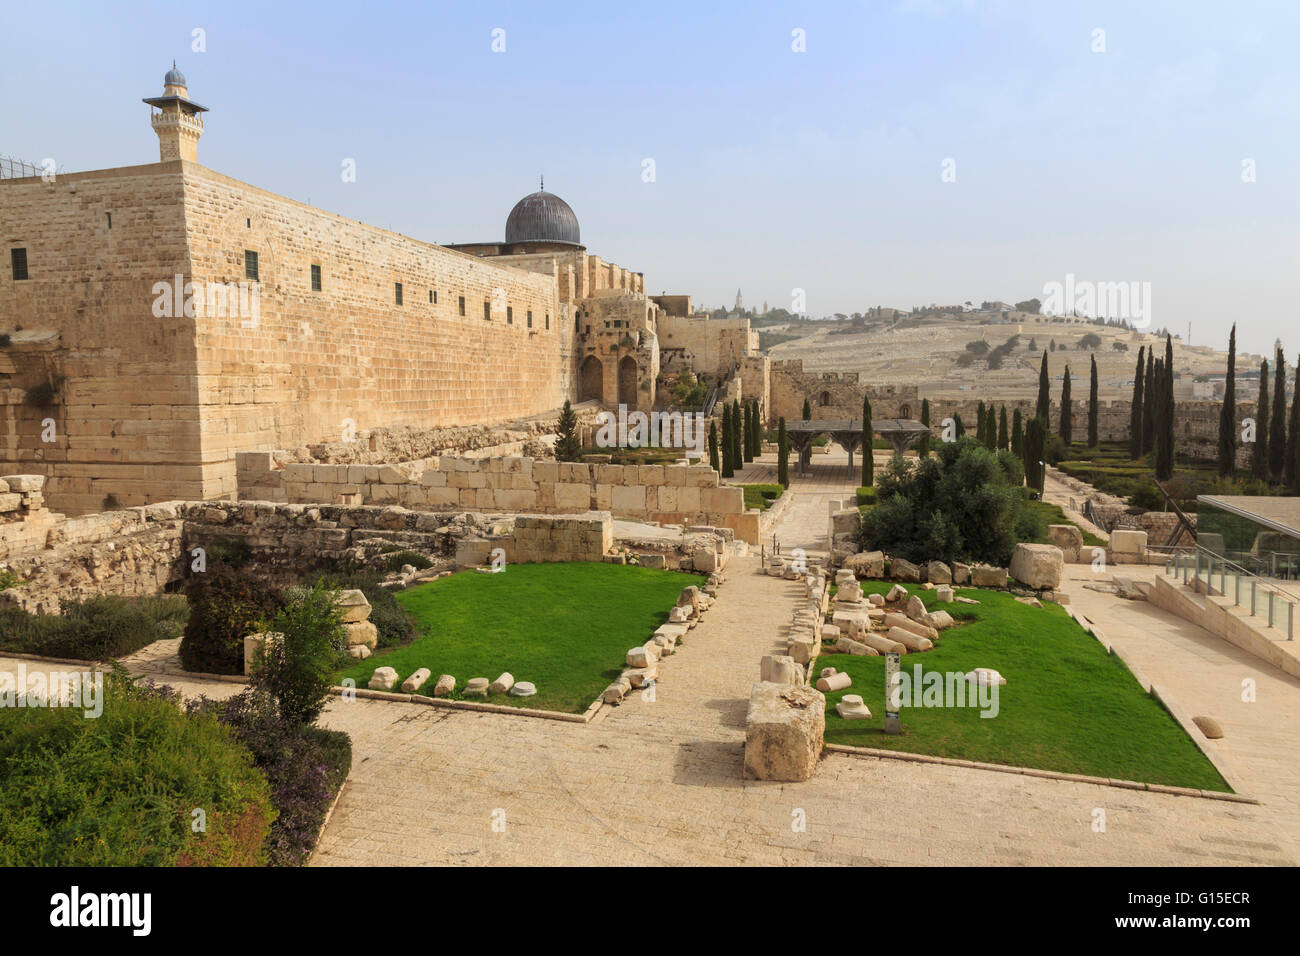 La Moschea di Al-Aqsa sul Monte del Tempio con il Parco Archeologico e il monte degli Ulivi, Gerusalemme, UNESCO, Israele, Medio Oriente Foto Stock